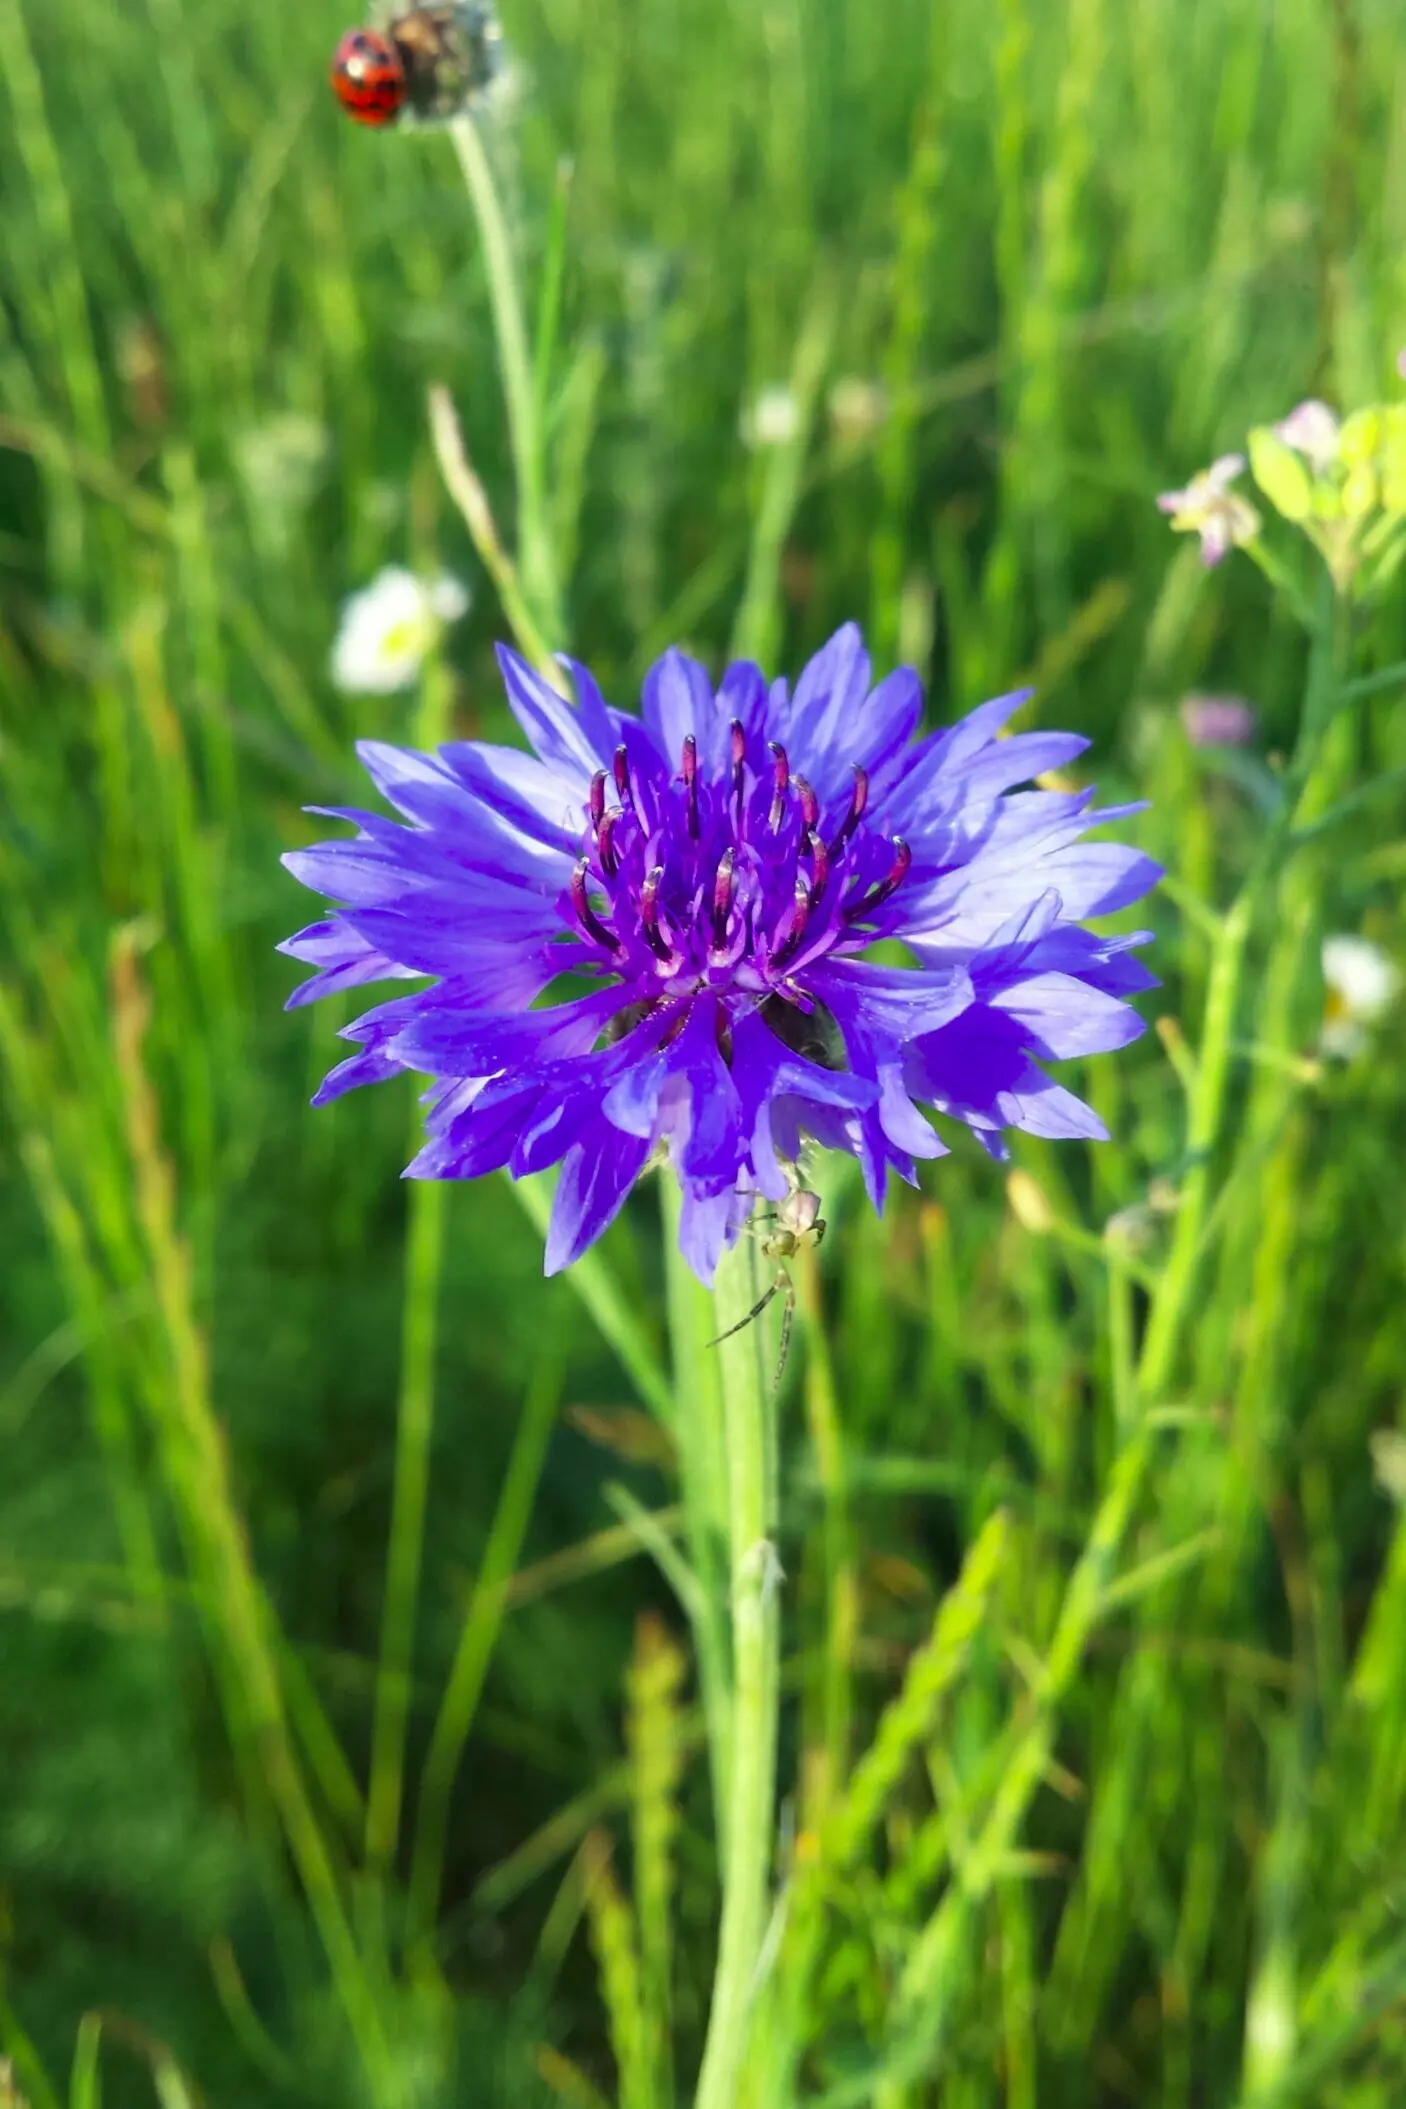 fiore azzurro dei campi - Come sono i fiori del grano